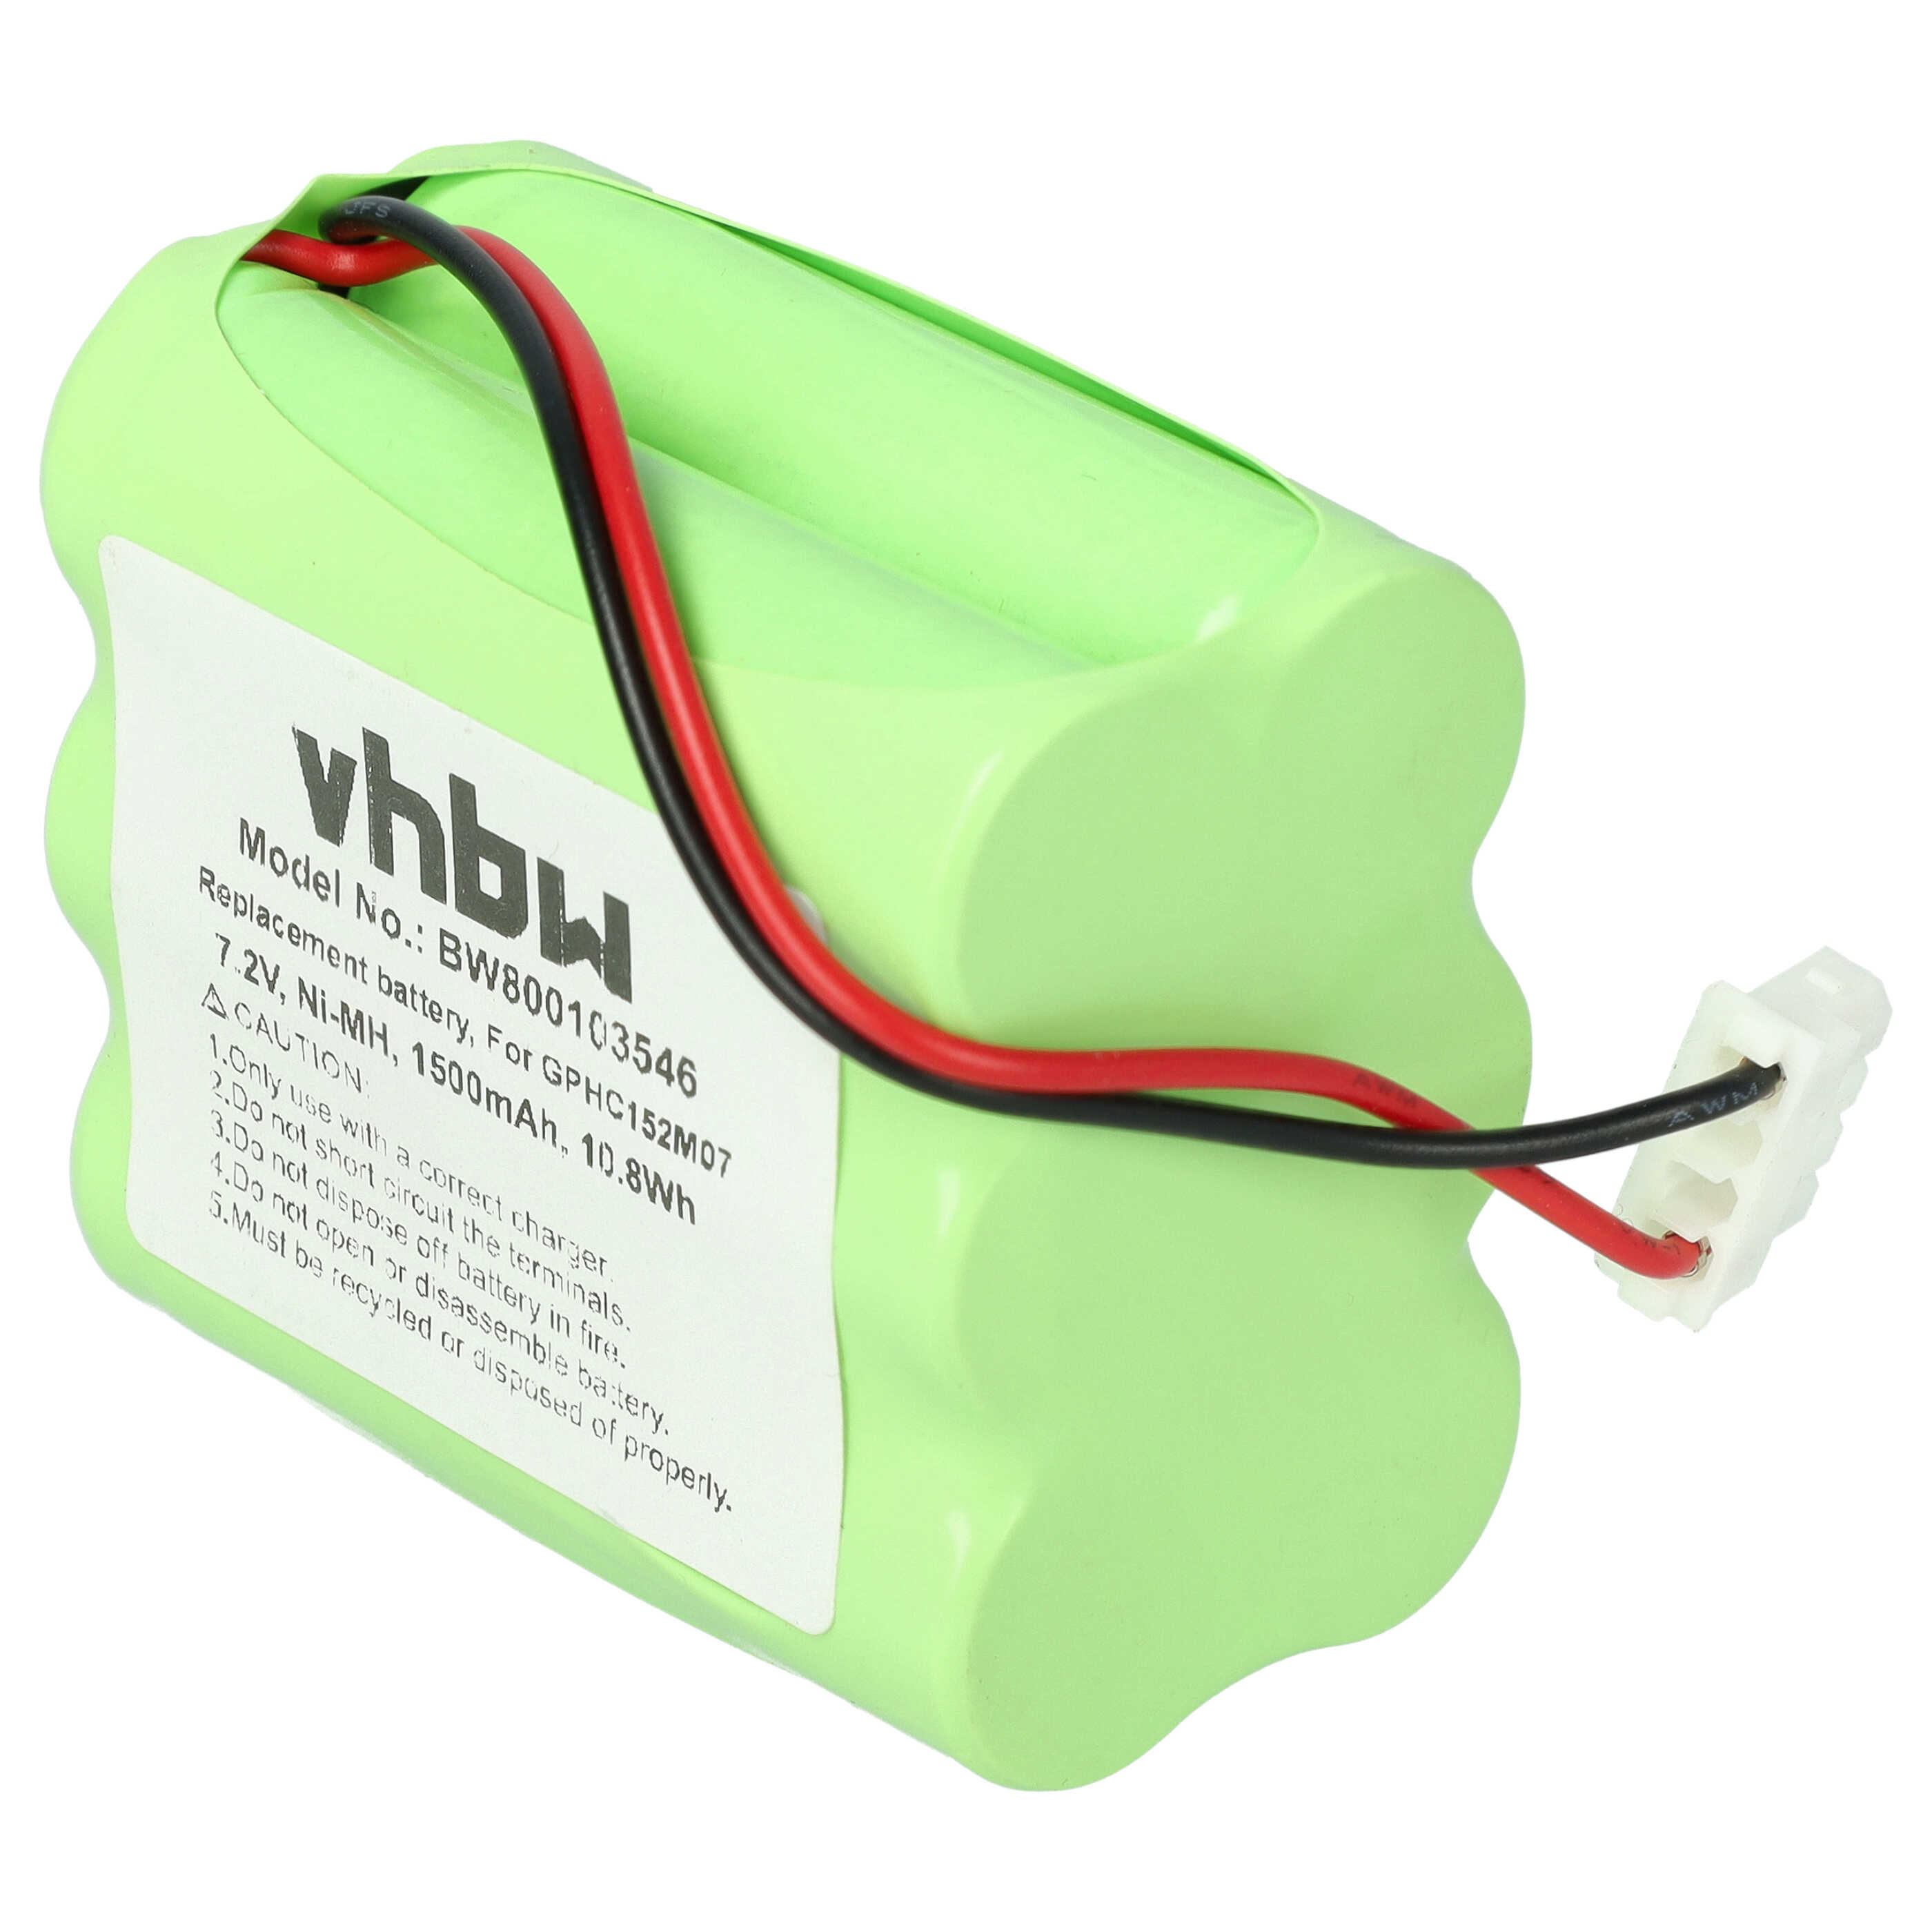 Batterie remplace GPRHC152M073 pour robot aspirateur - 1500mAh 7,2V NiMH